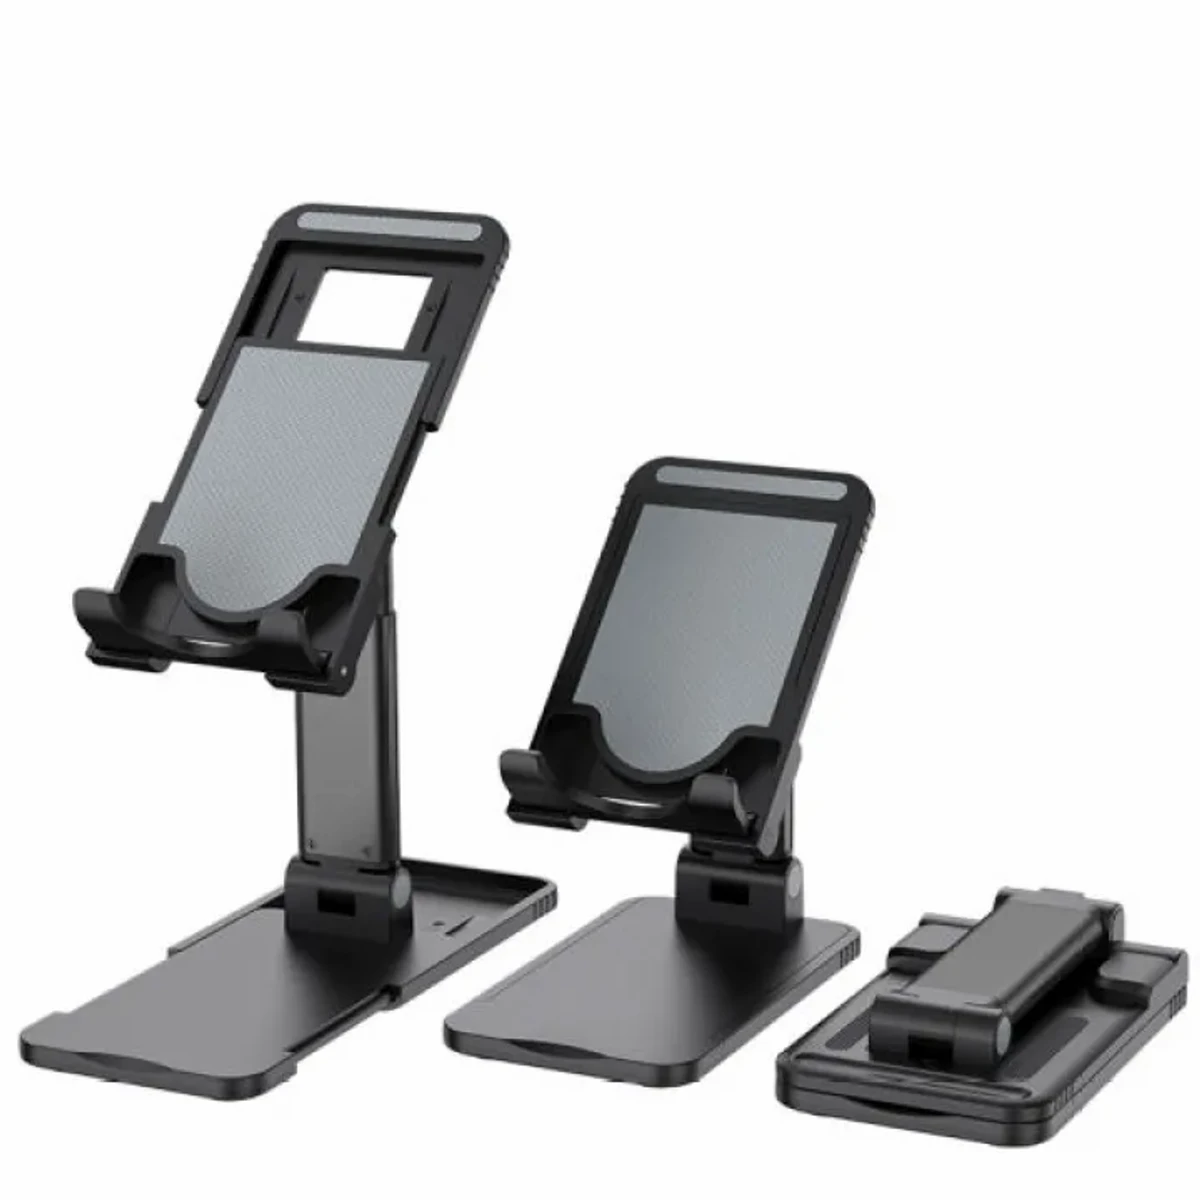 Foldable phone stand holder, Desktop Mobile Stand, Holder, Adjustable, Lift able, Fold able, Universal